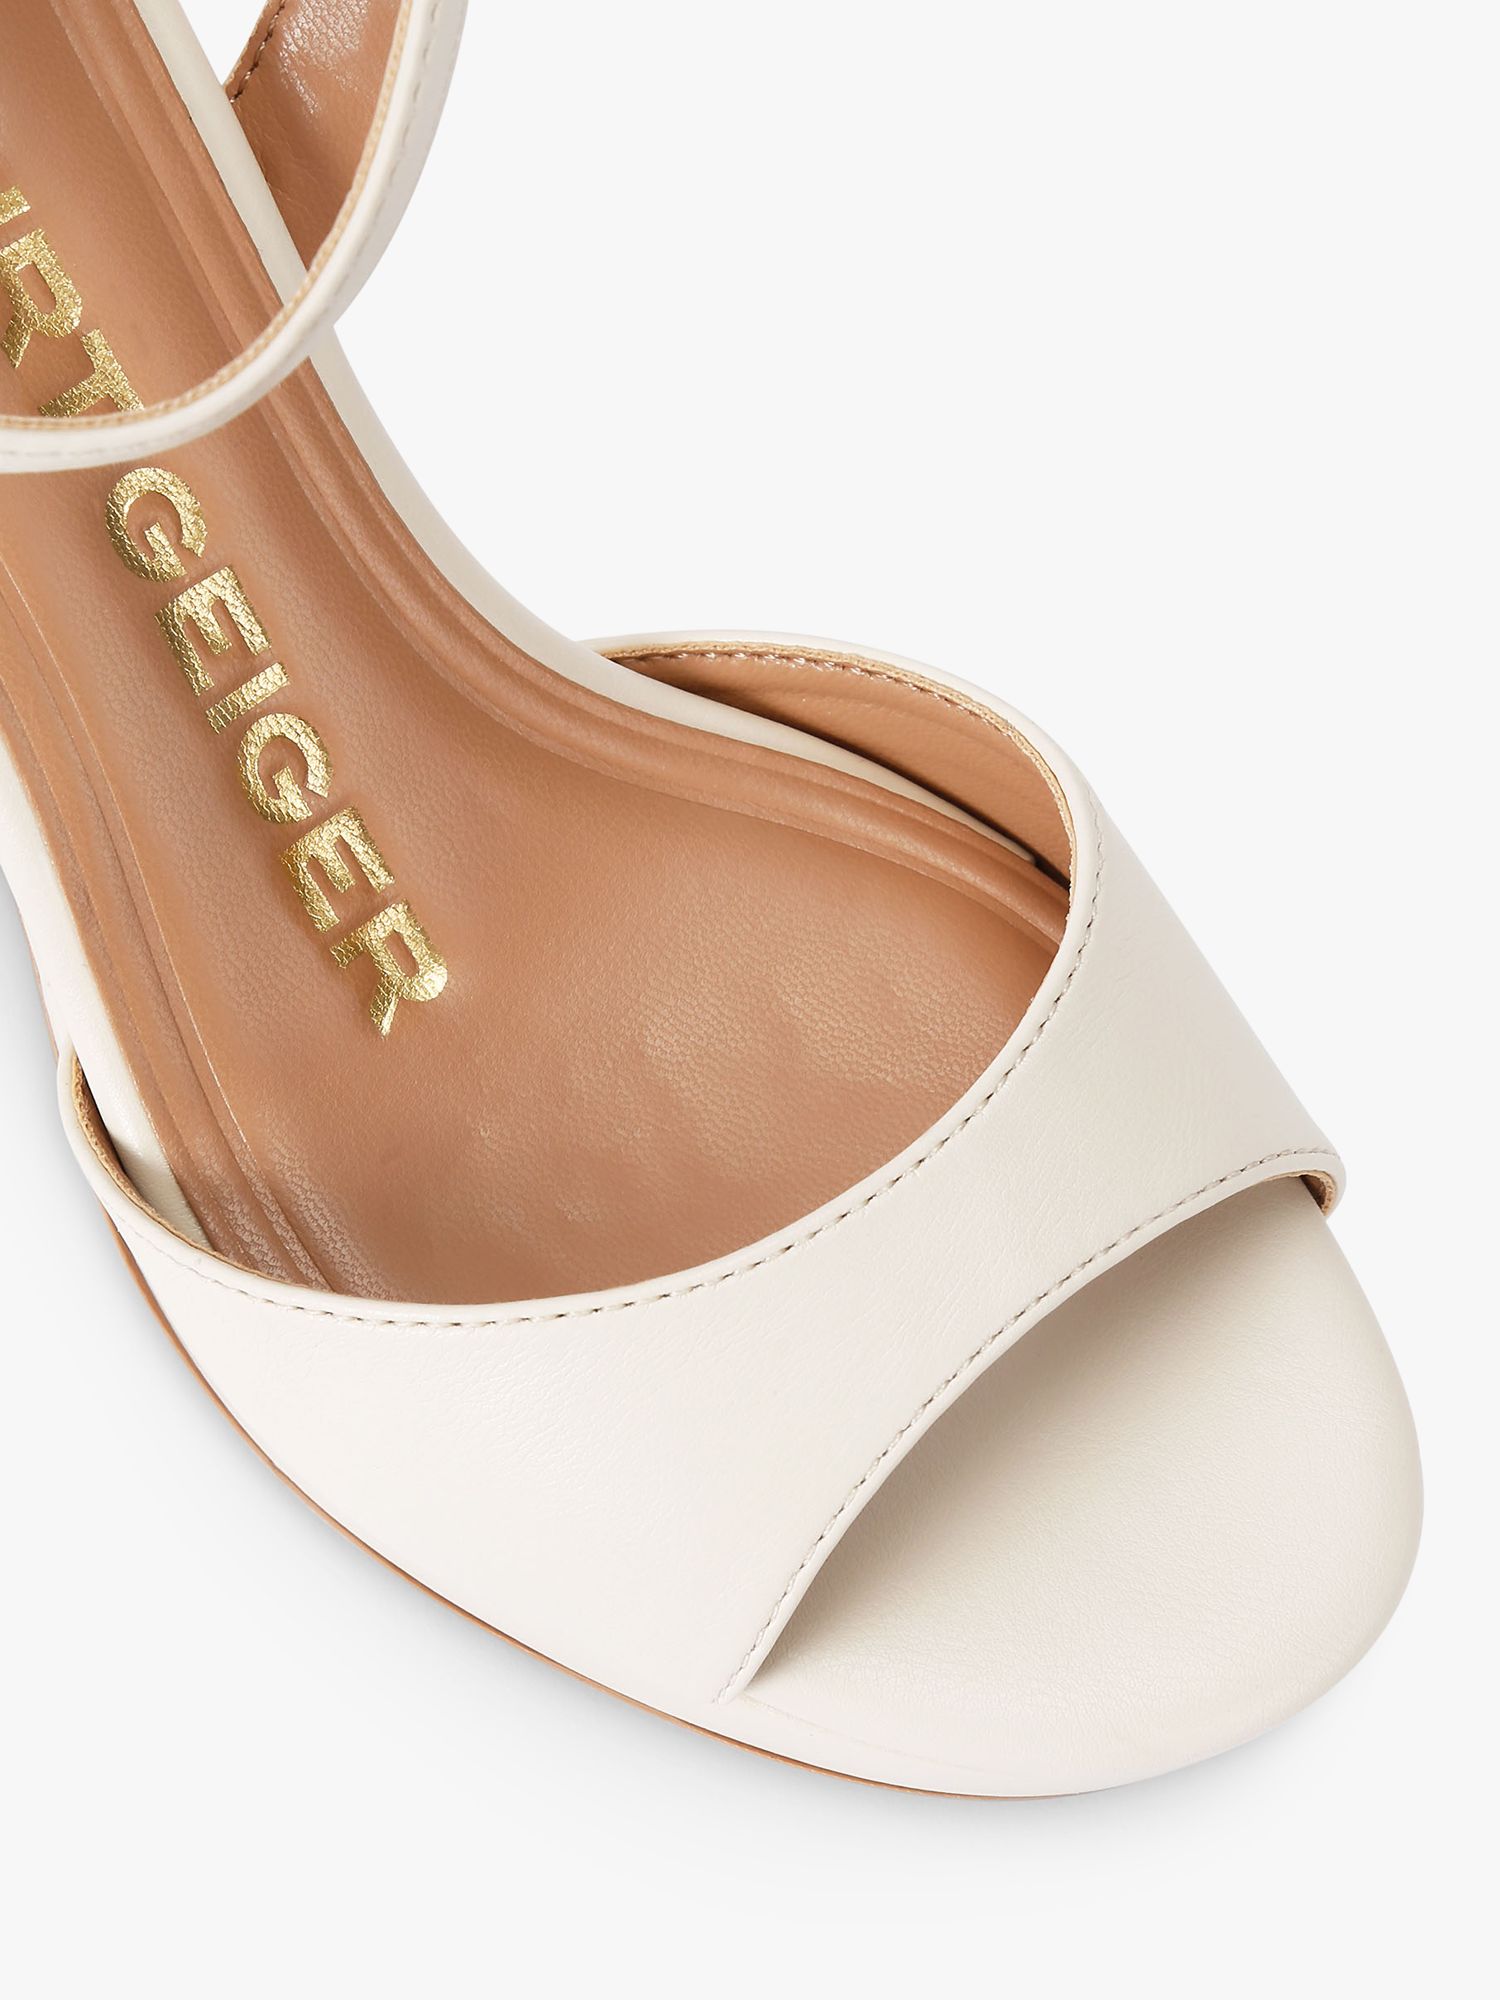 Buy KG Kurt Geiger Florence Platform Heel Sandals Online at johnlewis.com